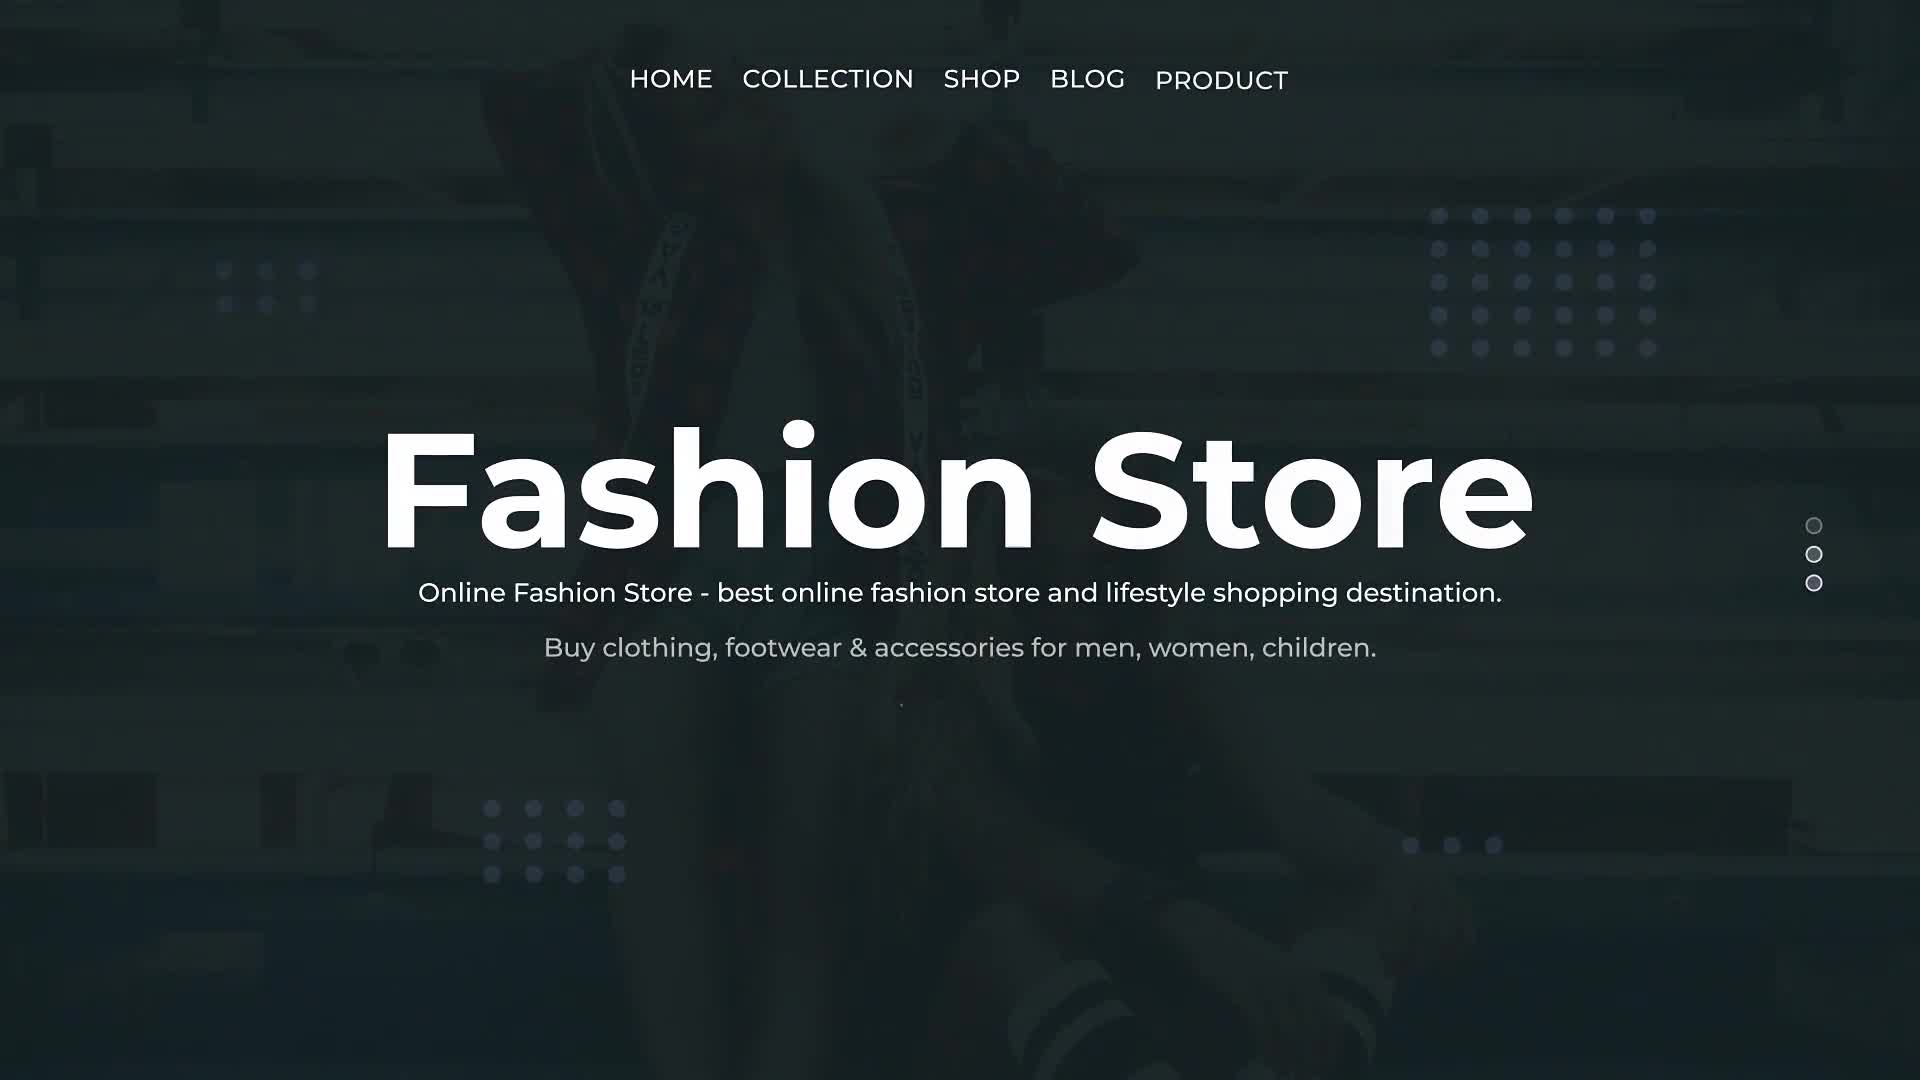 Fashion Store Videohive 23276013 Premiere Pro Image 1